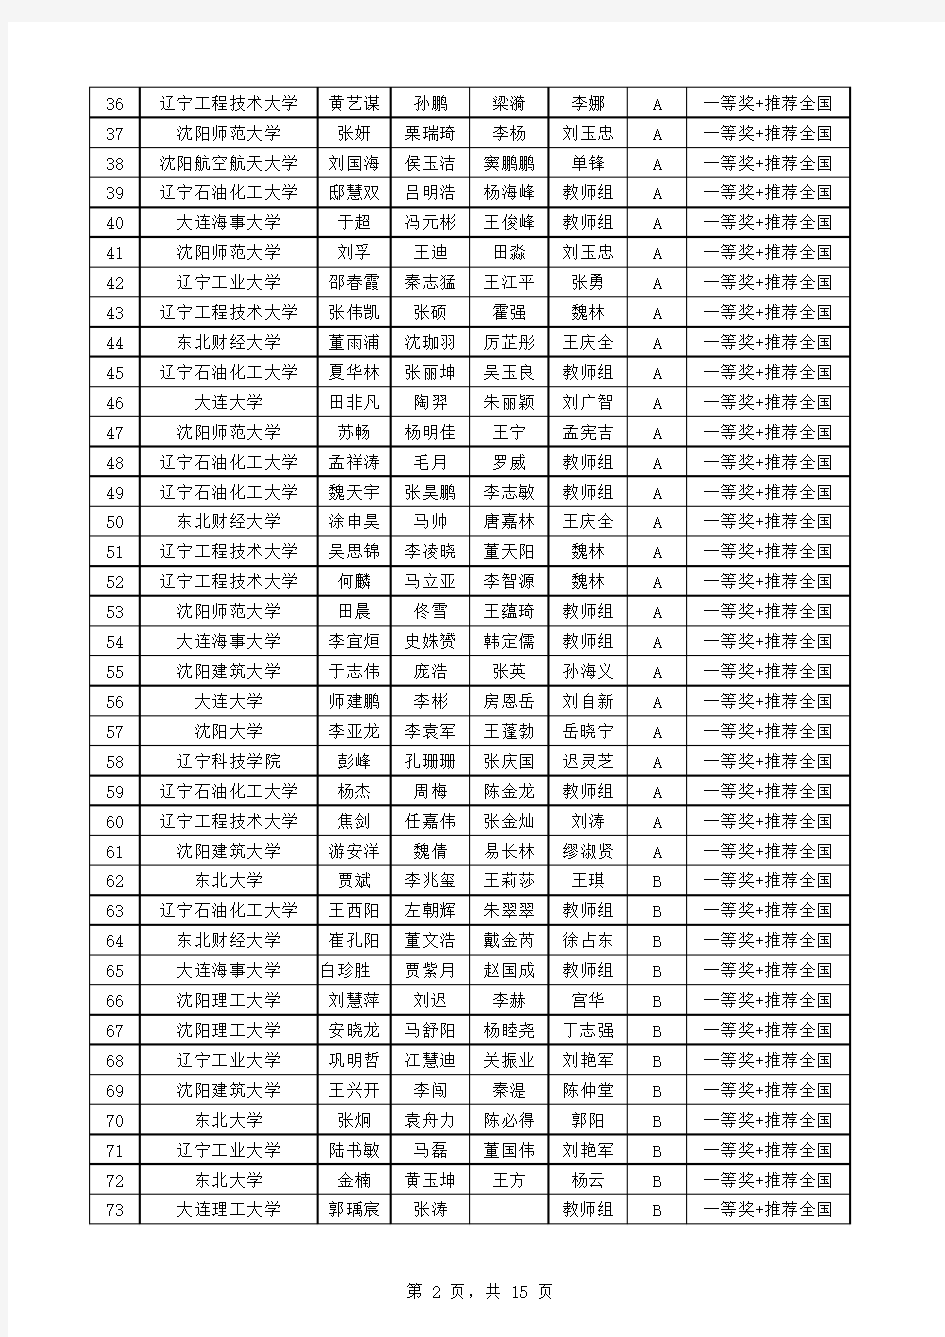 2014年全国大学生数学建模竞赛辽宁赛区竞赛获奖名单(本科)